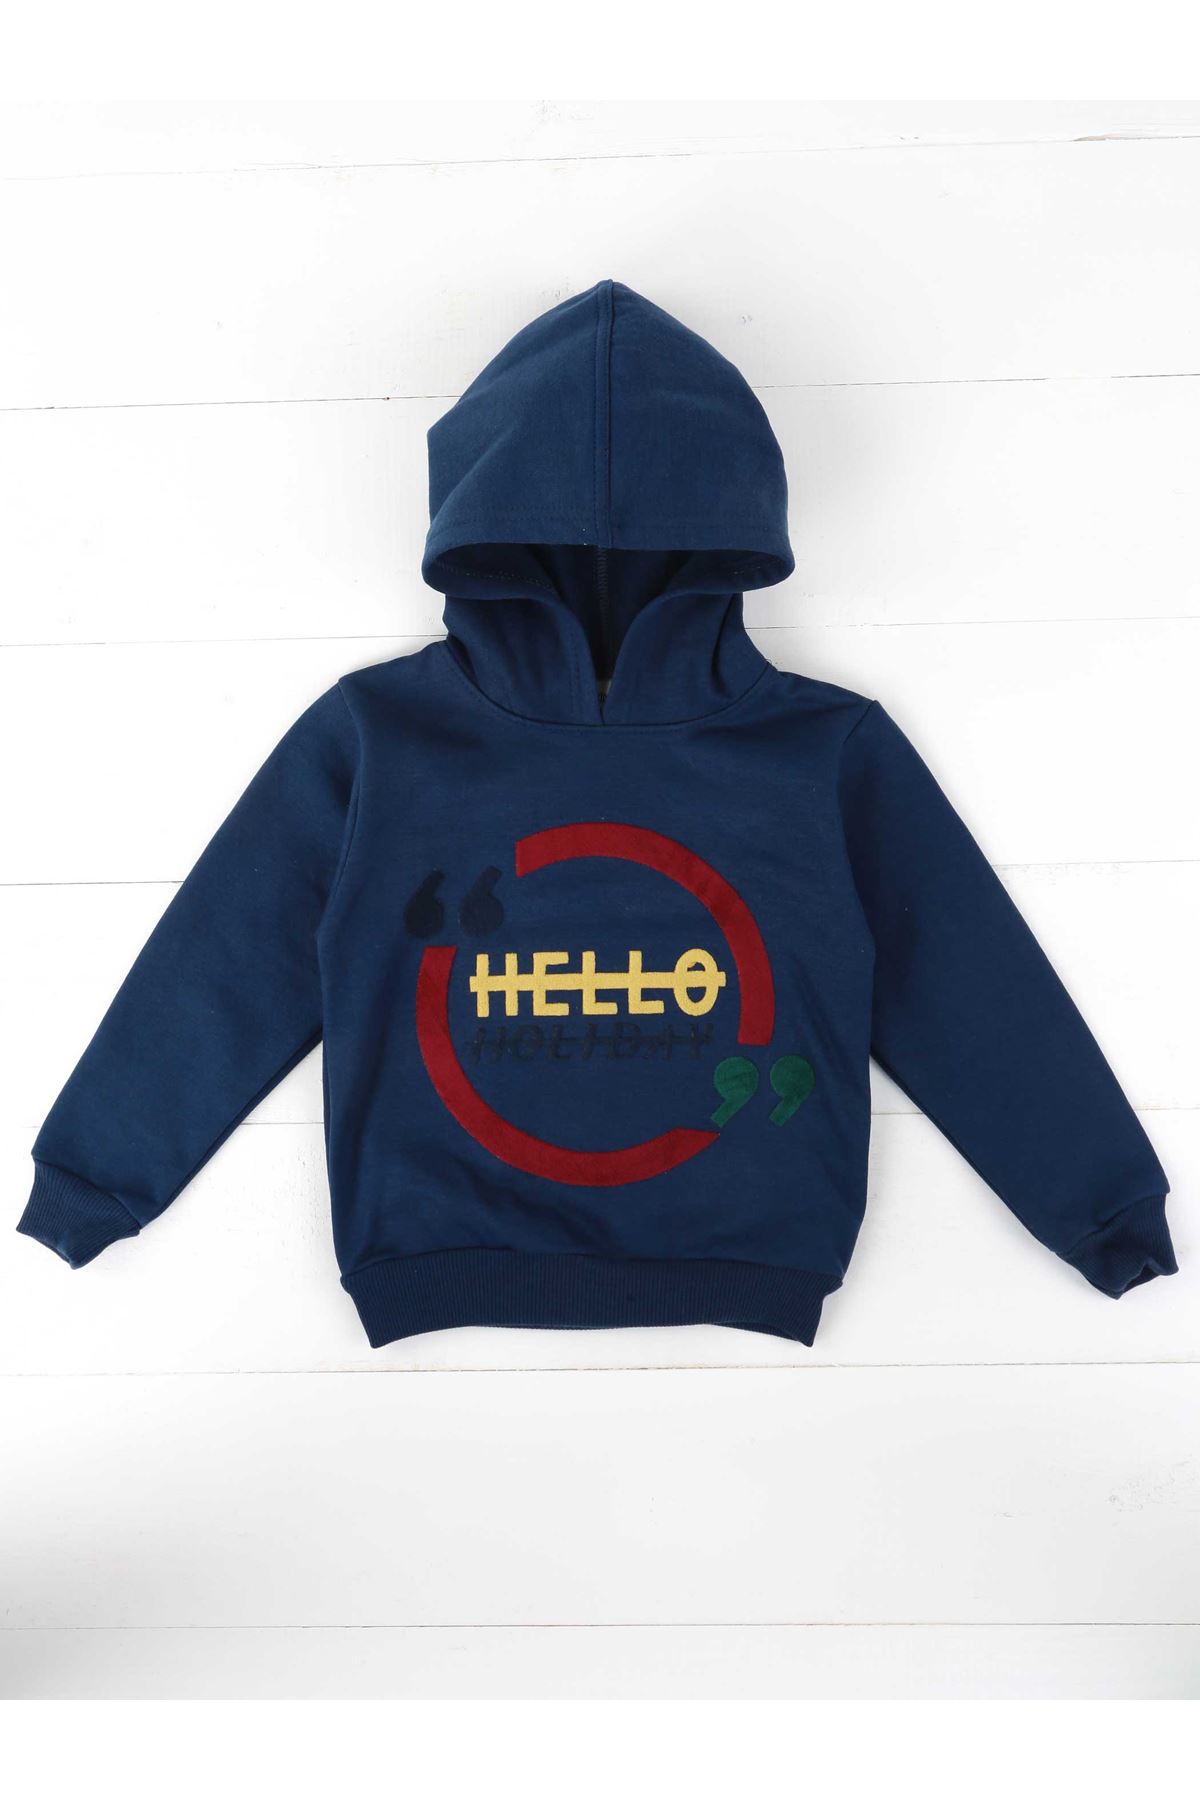 Indigo Seasonal Hooded Male Child Sweatshirt